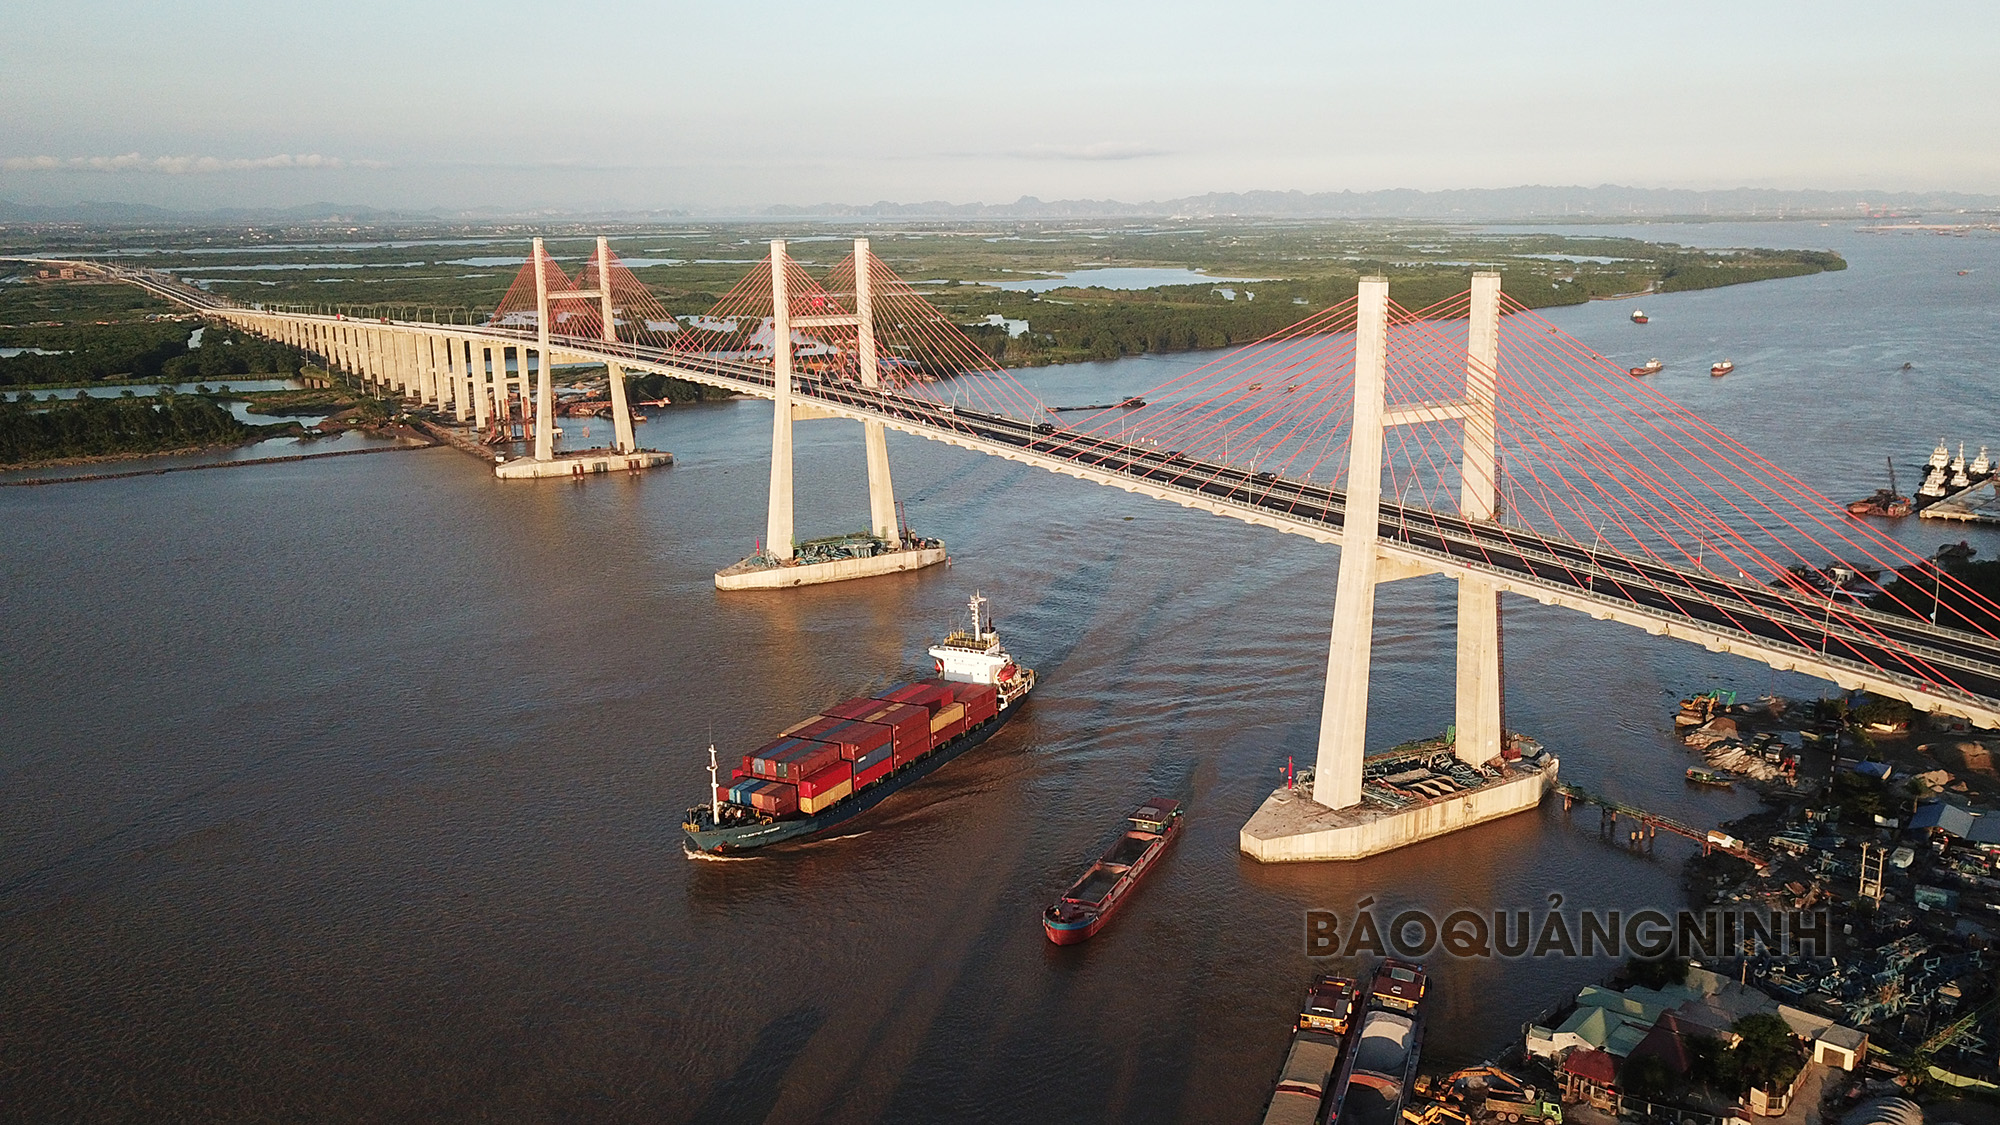 Cầu Bạch Đằng chính thức đưa vào khai thác từ ngày 1/9/2018. Ảnh: Báo Quảng Ninh